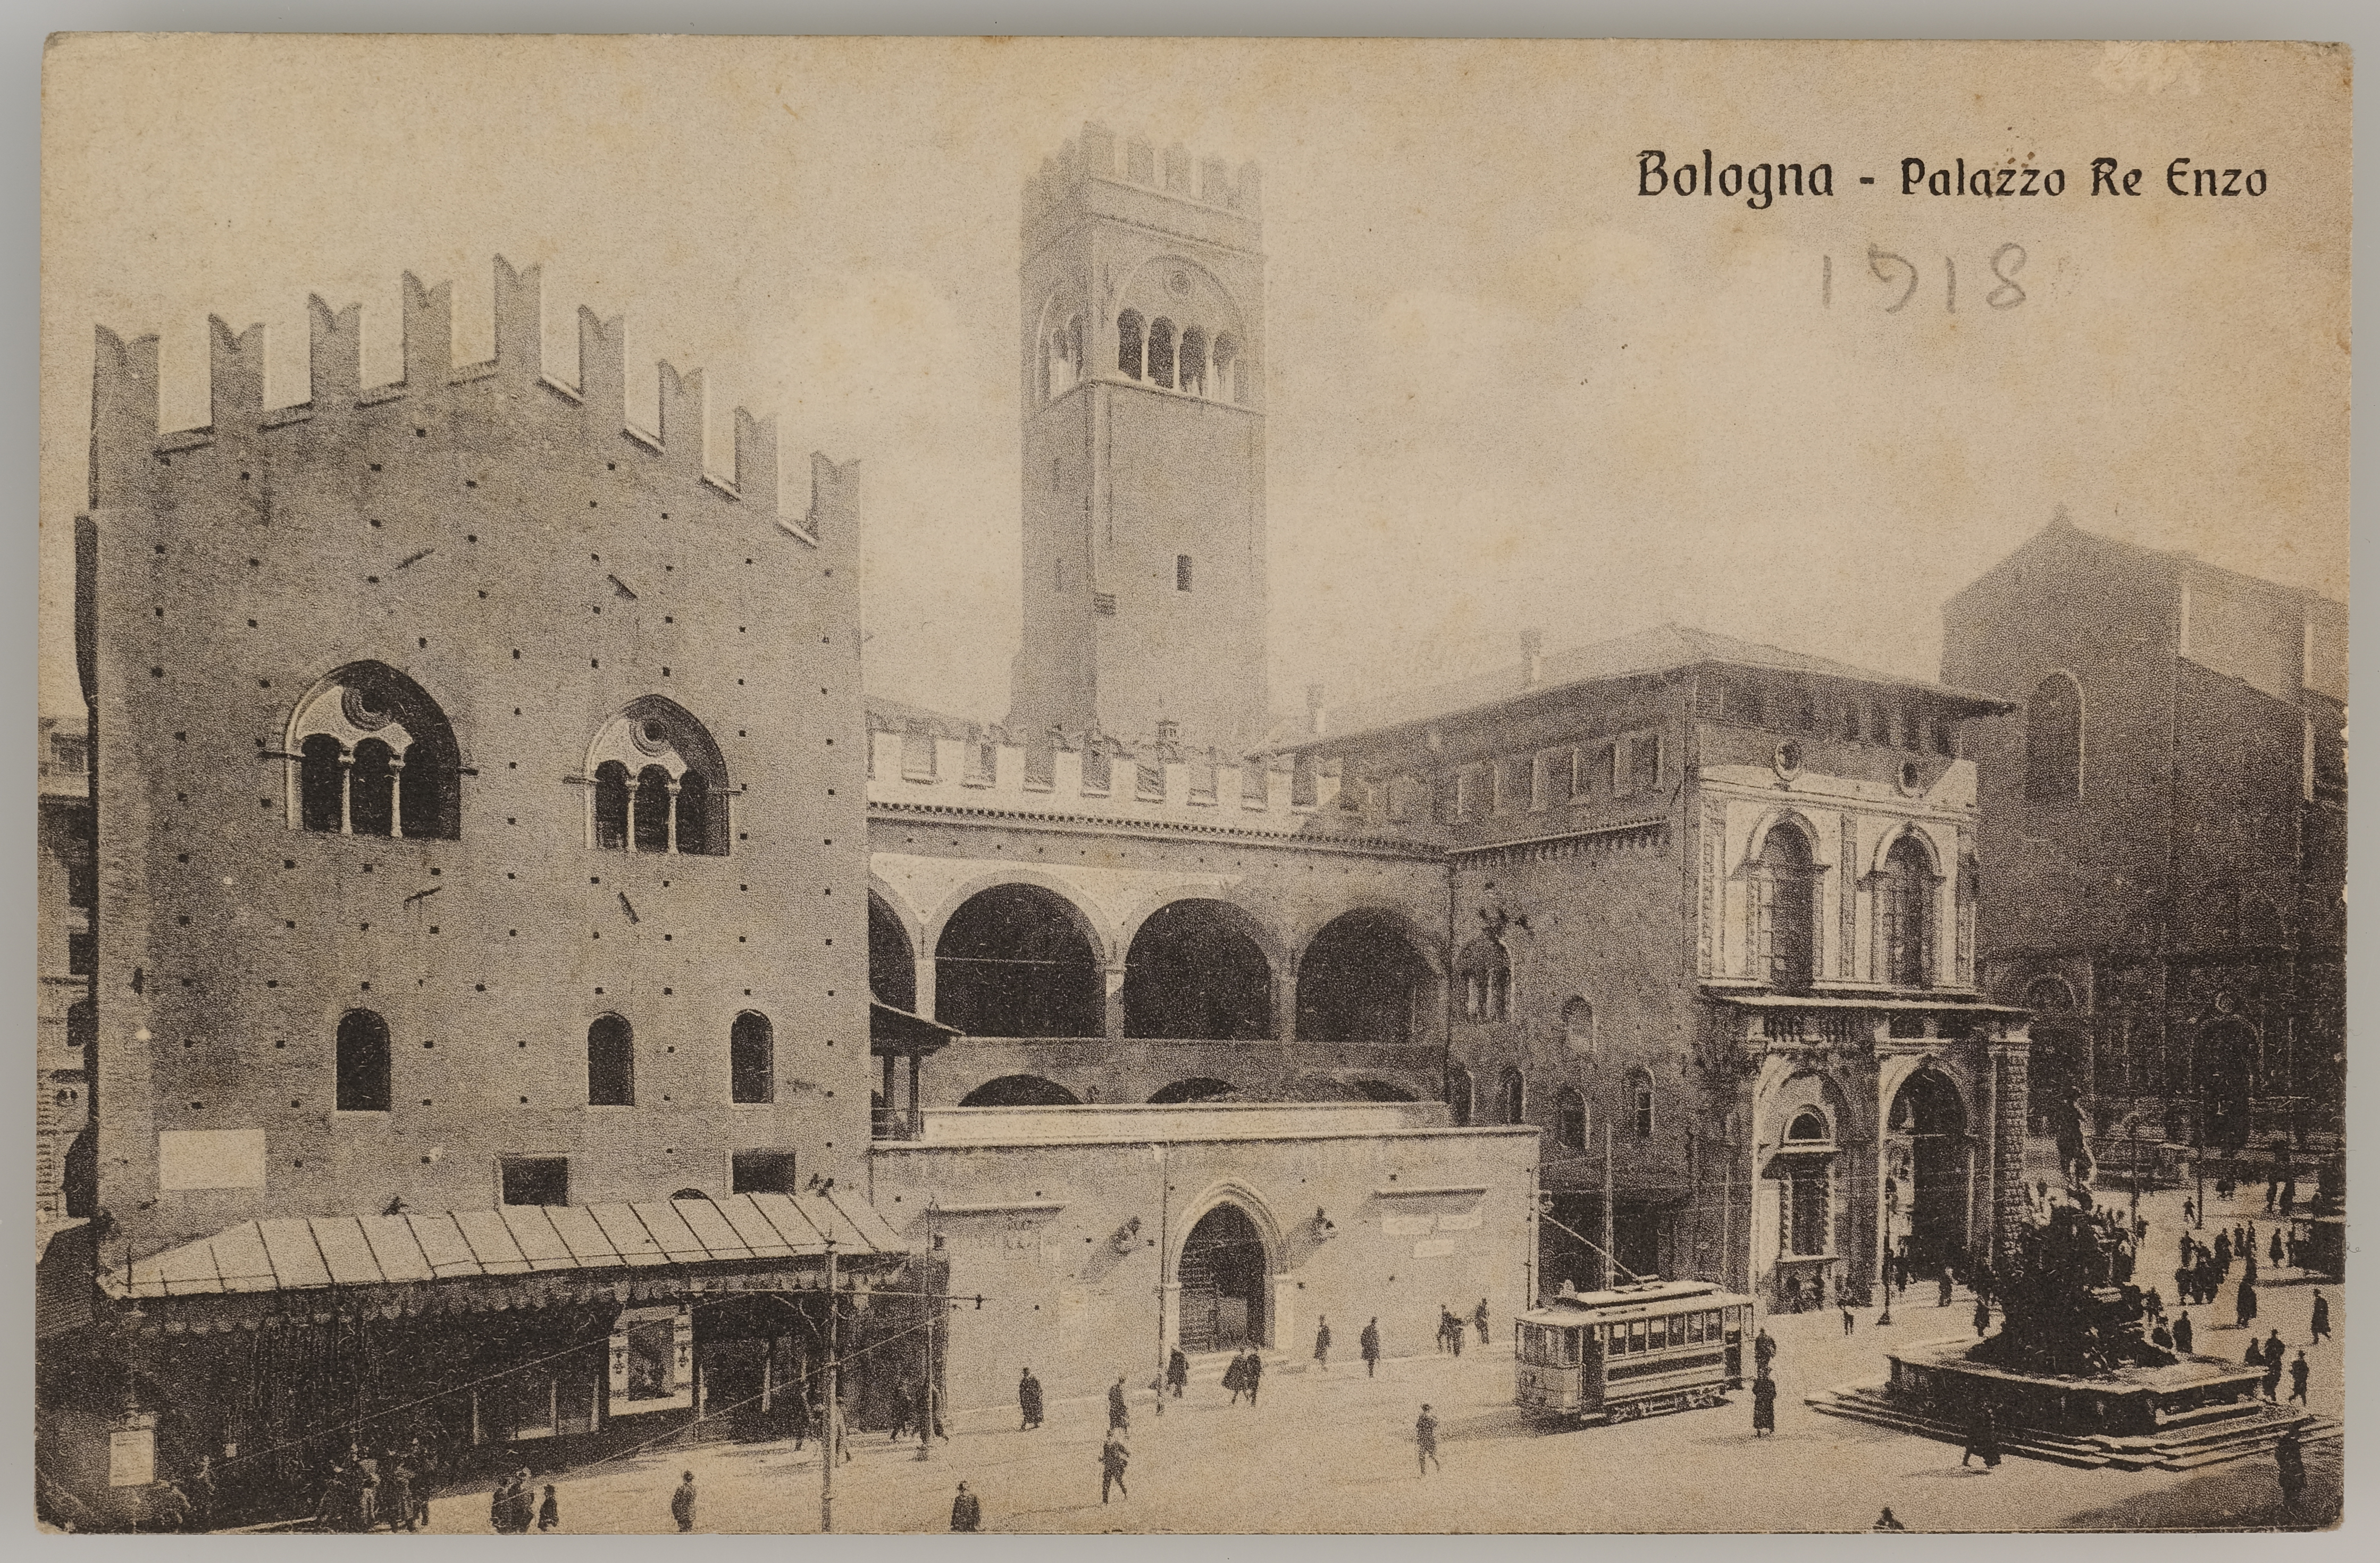 Fotografo non identificato, Bologna - Palazzo Re Enzo, 1918, stampa fotomeccanica/ cartolina postale, DVC000178